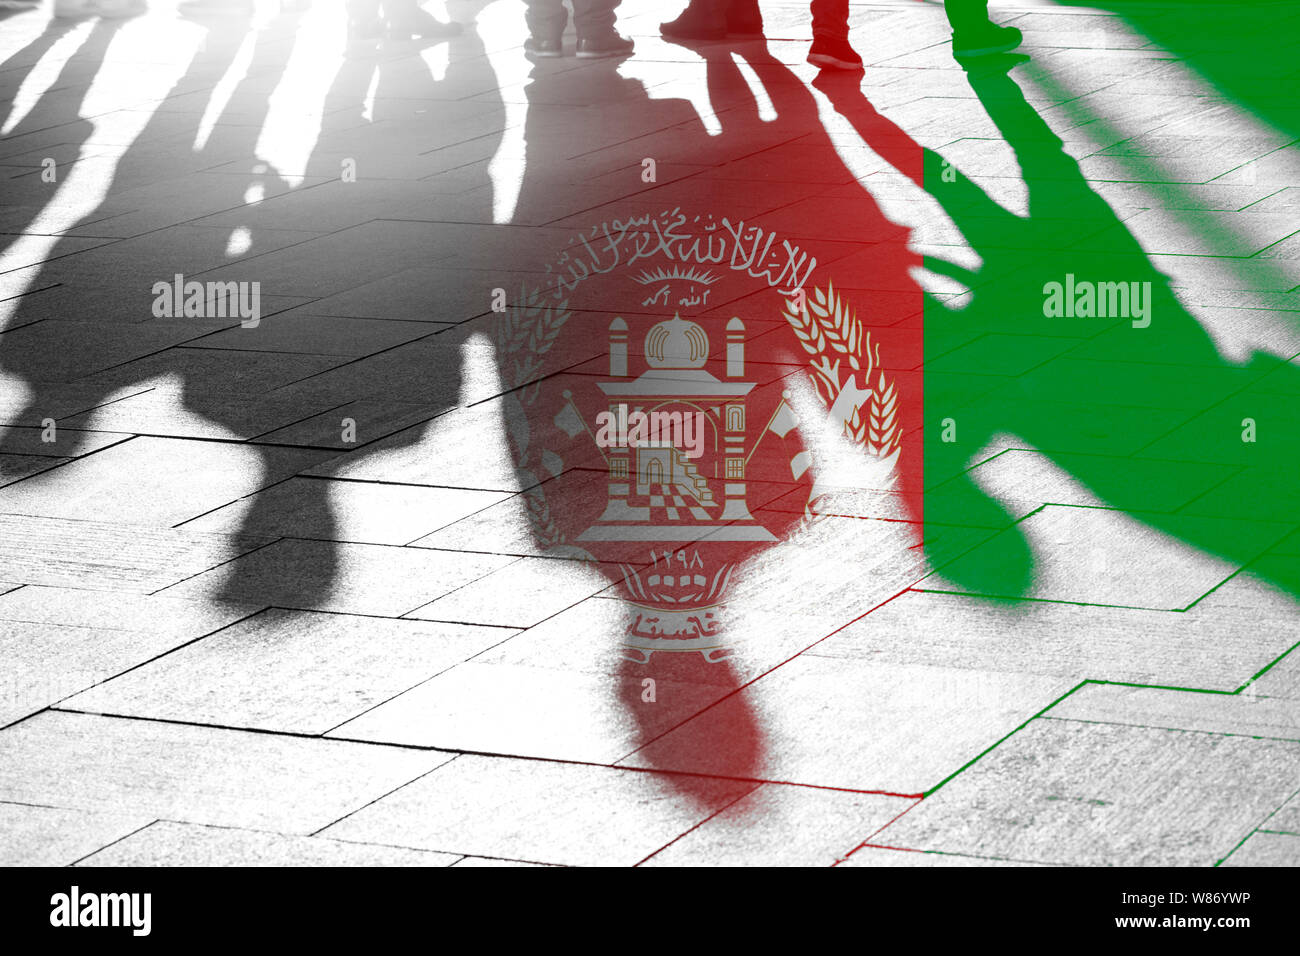 Flagge Afghanistan und Schatten von Menschen als Hintergrund - konzeptionelle Bild über Krieg, Freiheit, Abstimmung in Afghanistan Stockfoto